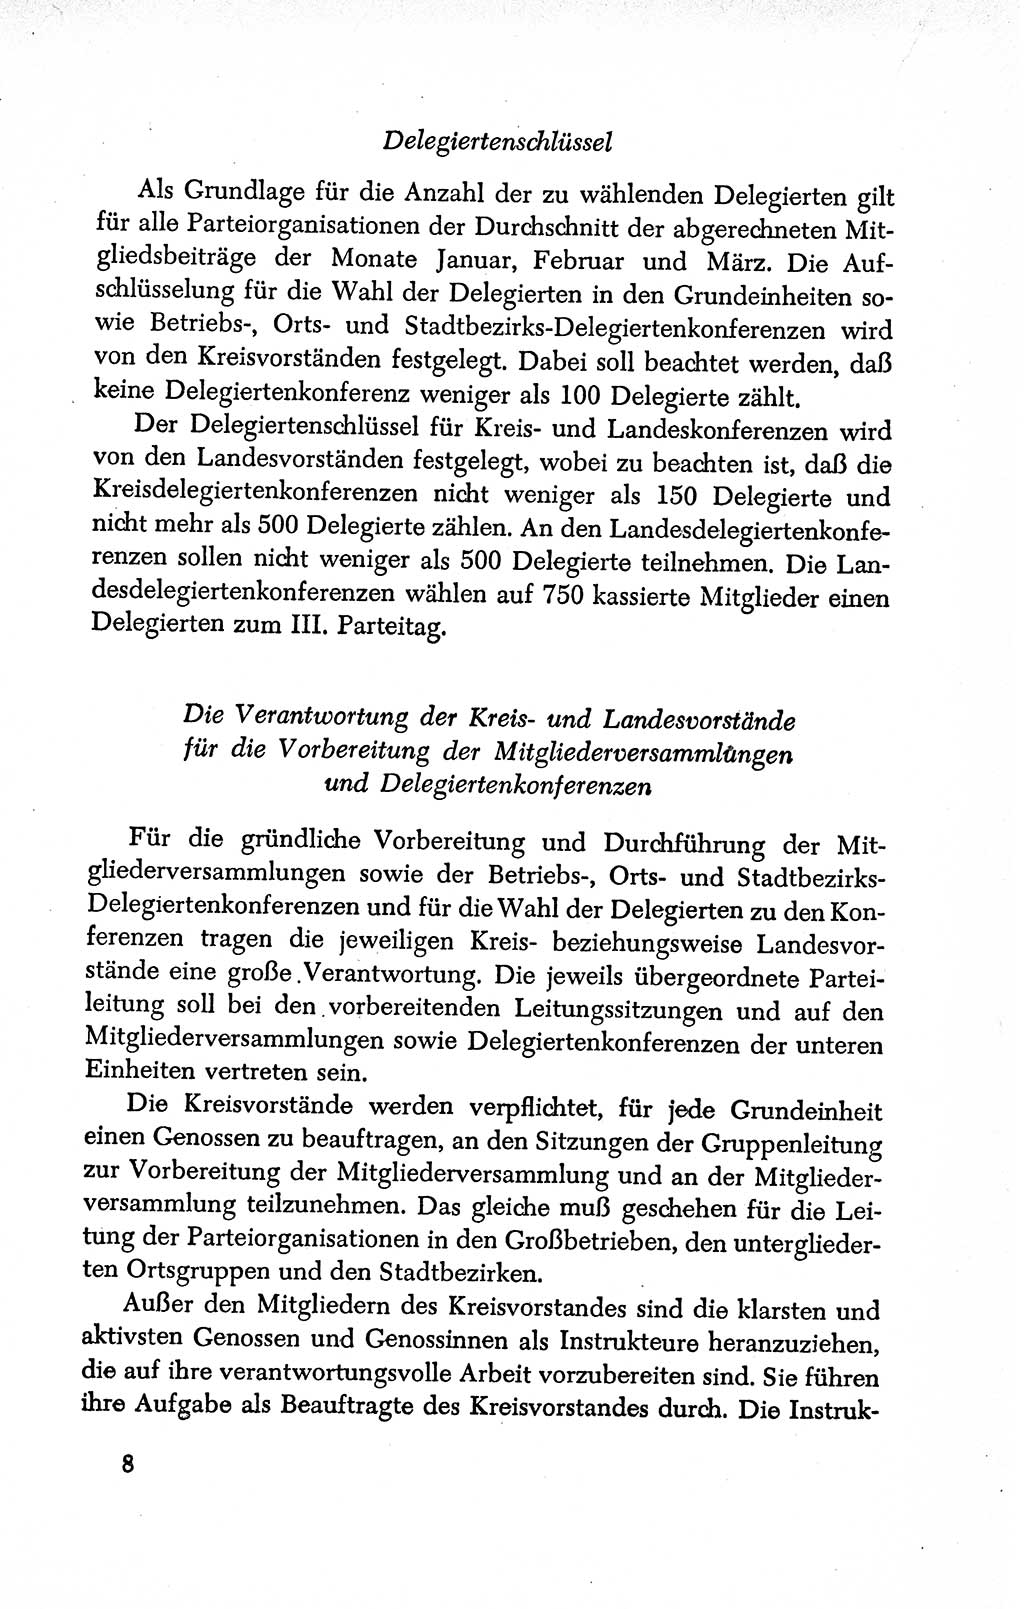 Dokumente der Sozialistischen Einheitspartei Deutschlands (SED) [Deutsche Demokratische Republik (DDR)] 1950-1952, Seite 8 (Dok. SED DDR 1950-1952, S. 8)